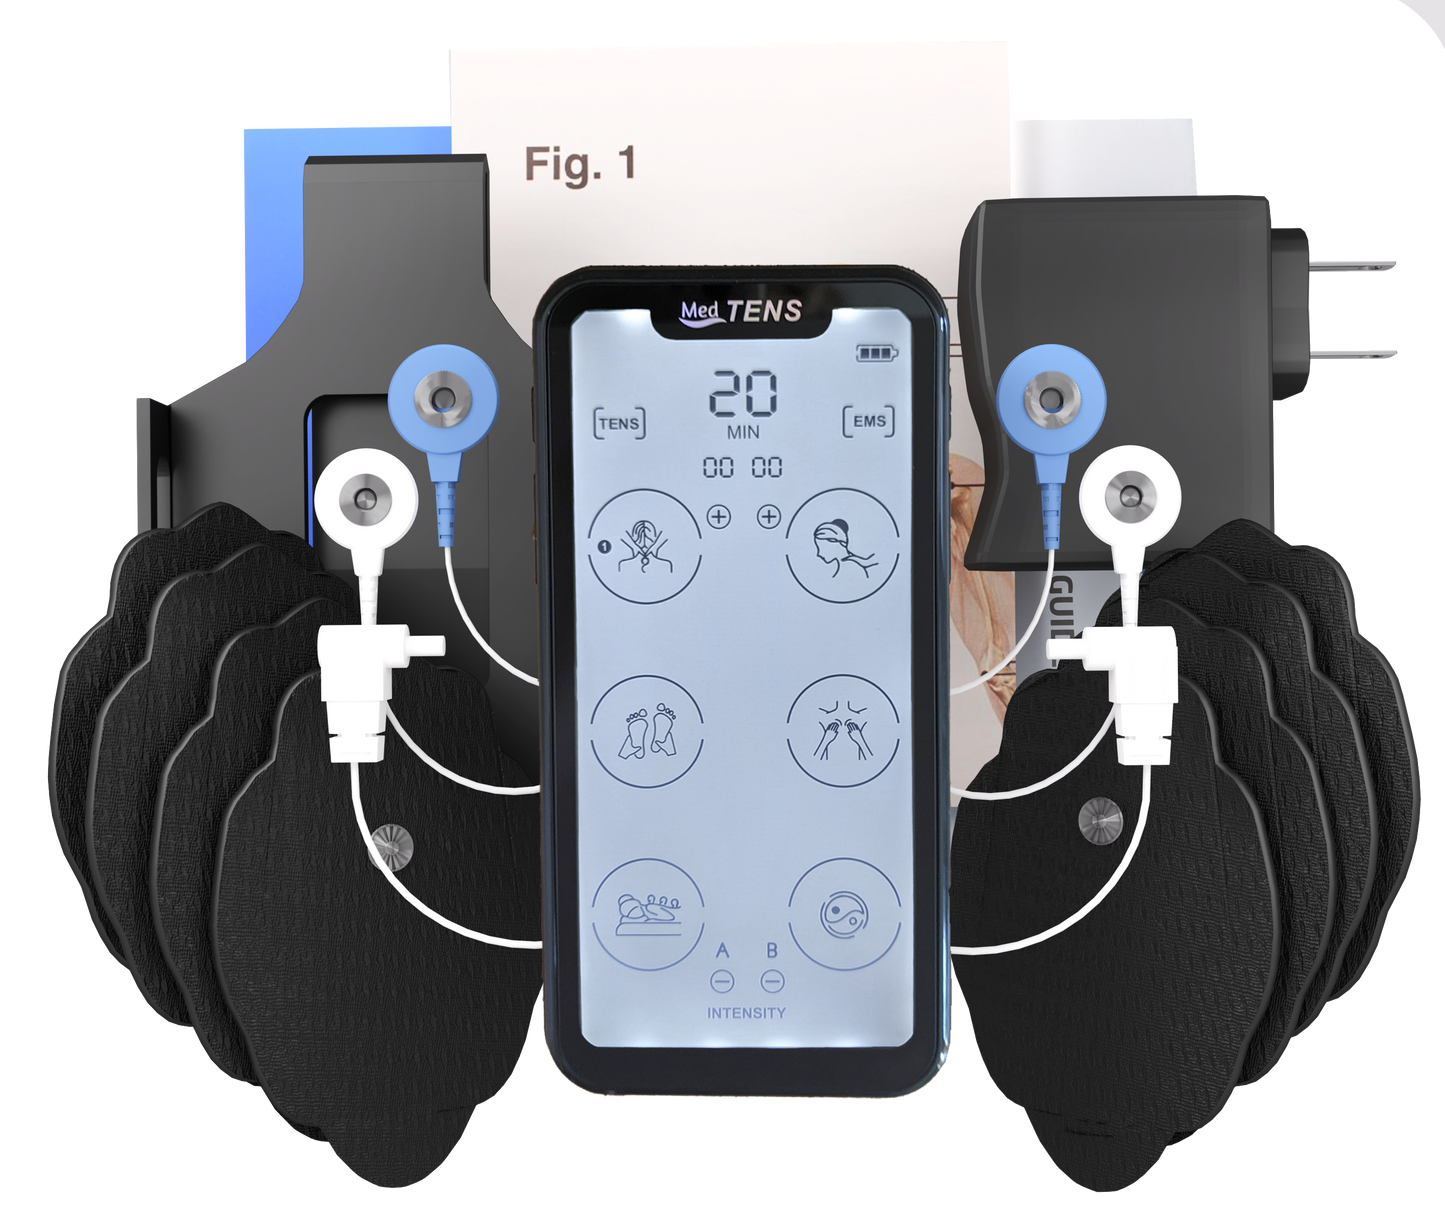 TechCare Pro 24 Different Modes Rechargeable Portable Tens Unit